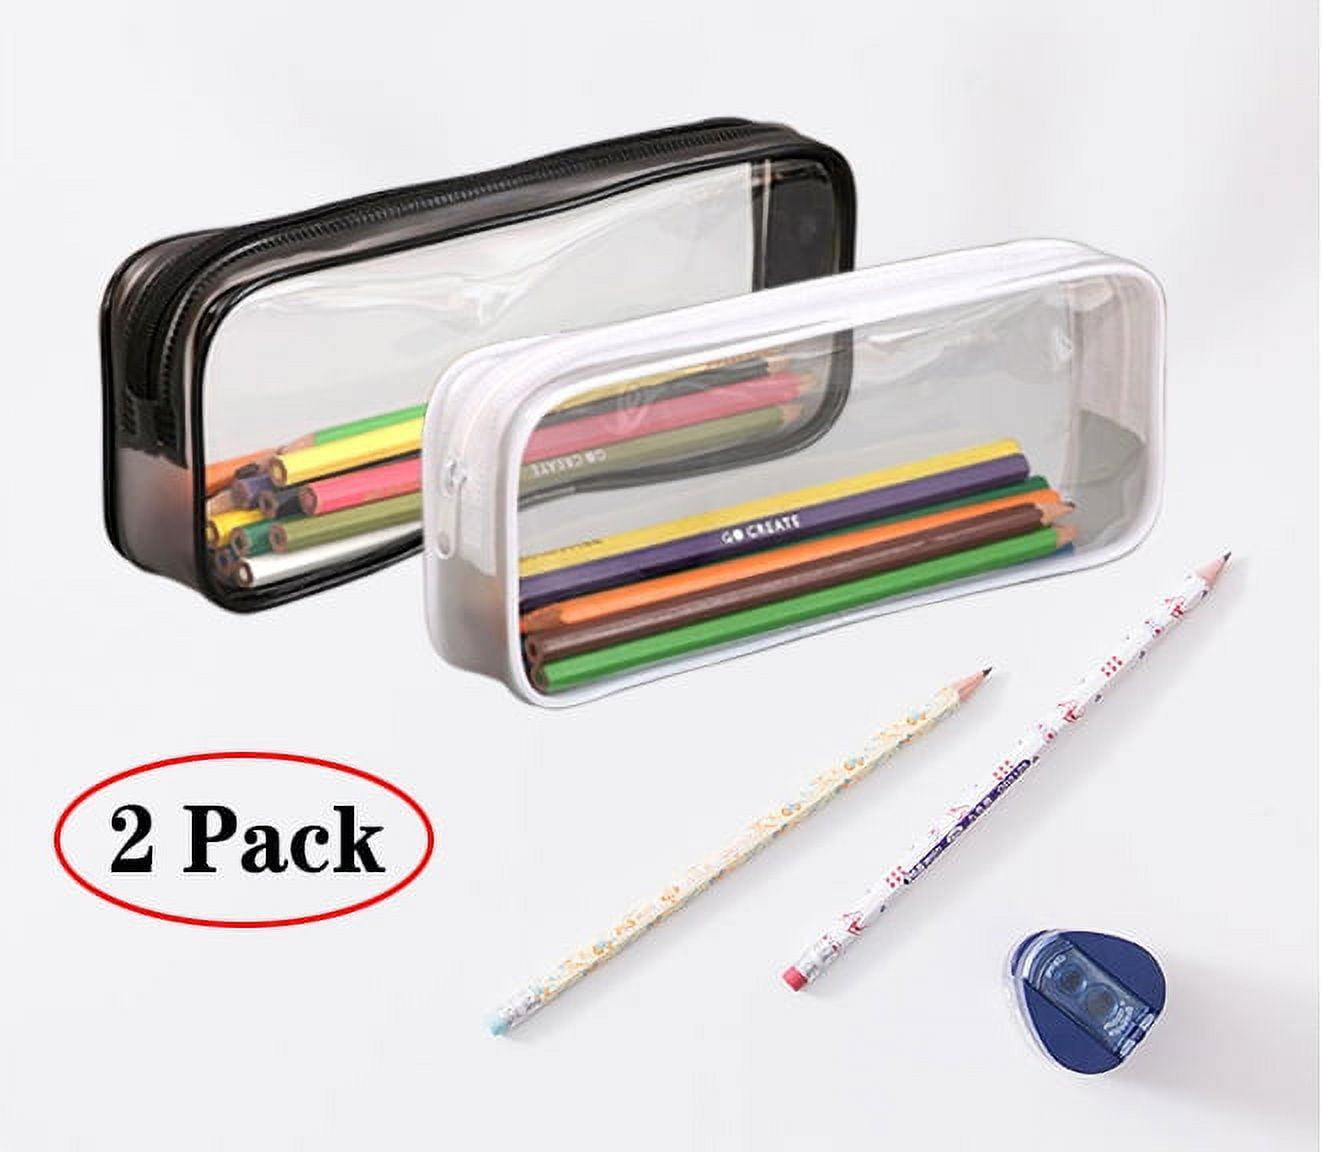 Pencil Case Pencil Pouch Pencil Bag PU Leather Pen Case Small Zipper Pouch  for Pencils, Pens, Markers, Makeups, Change - Green 